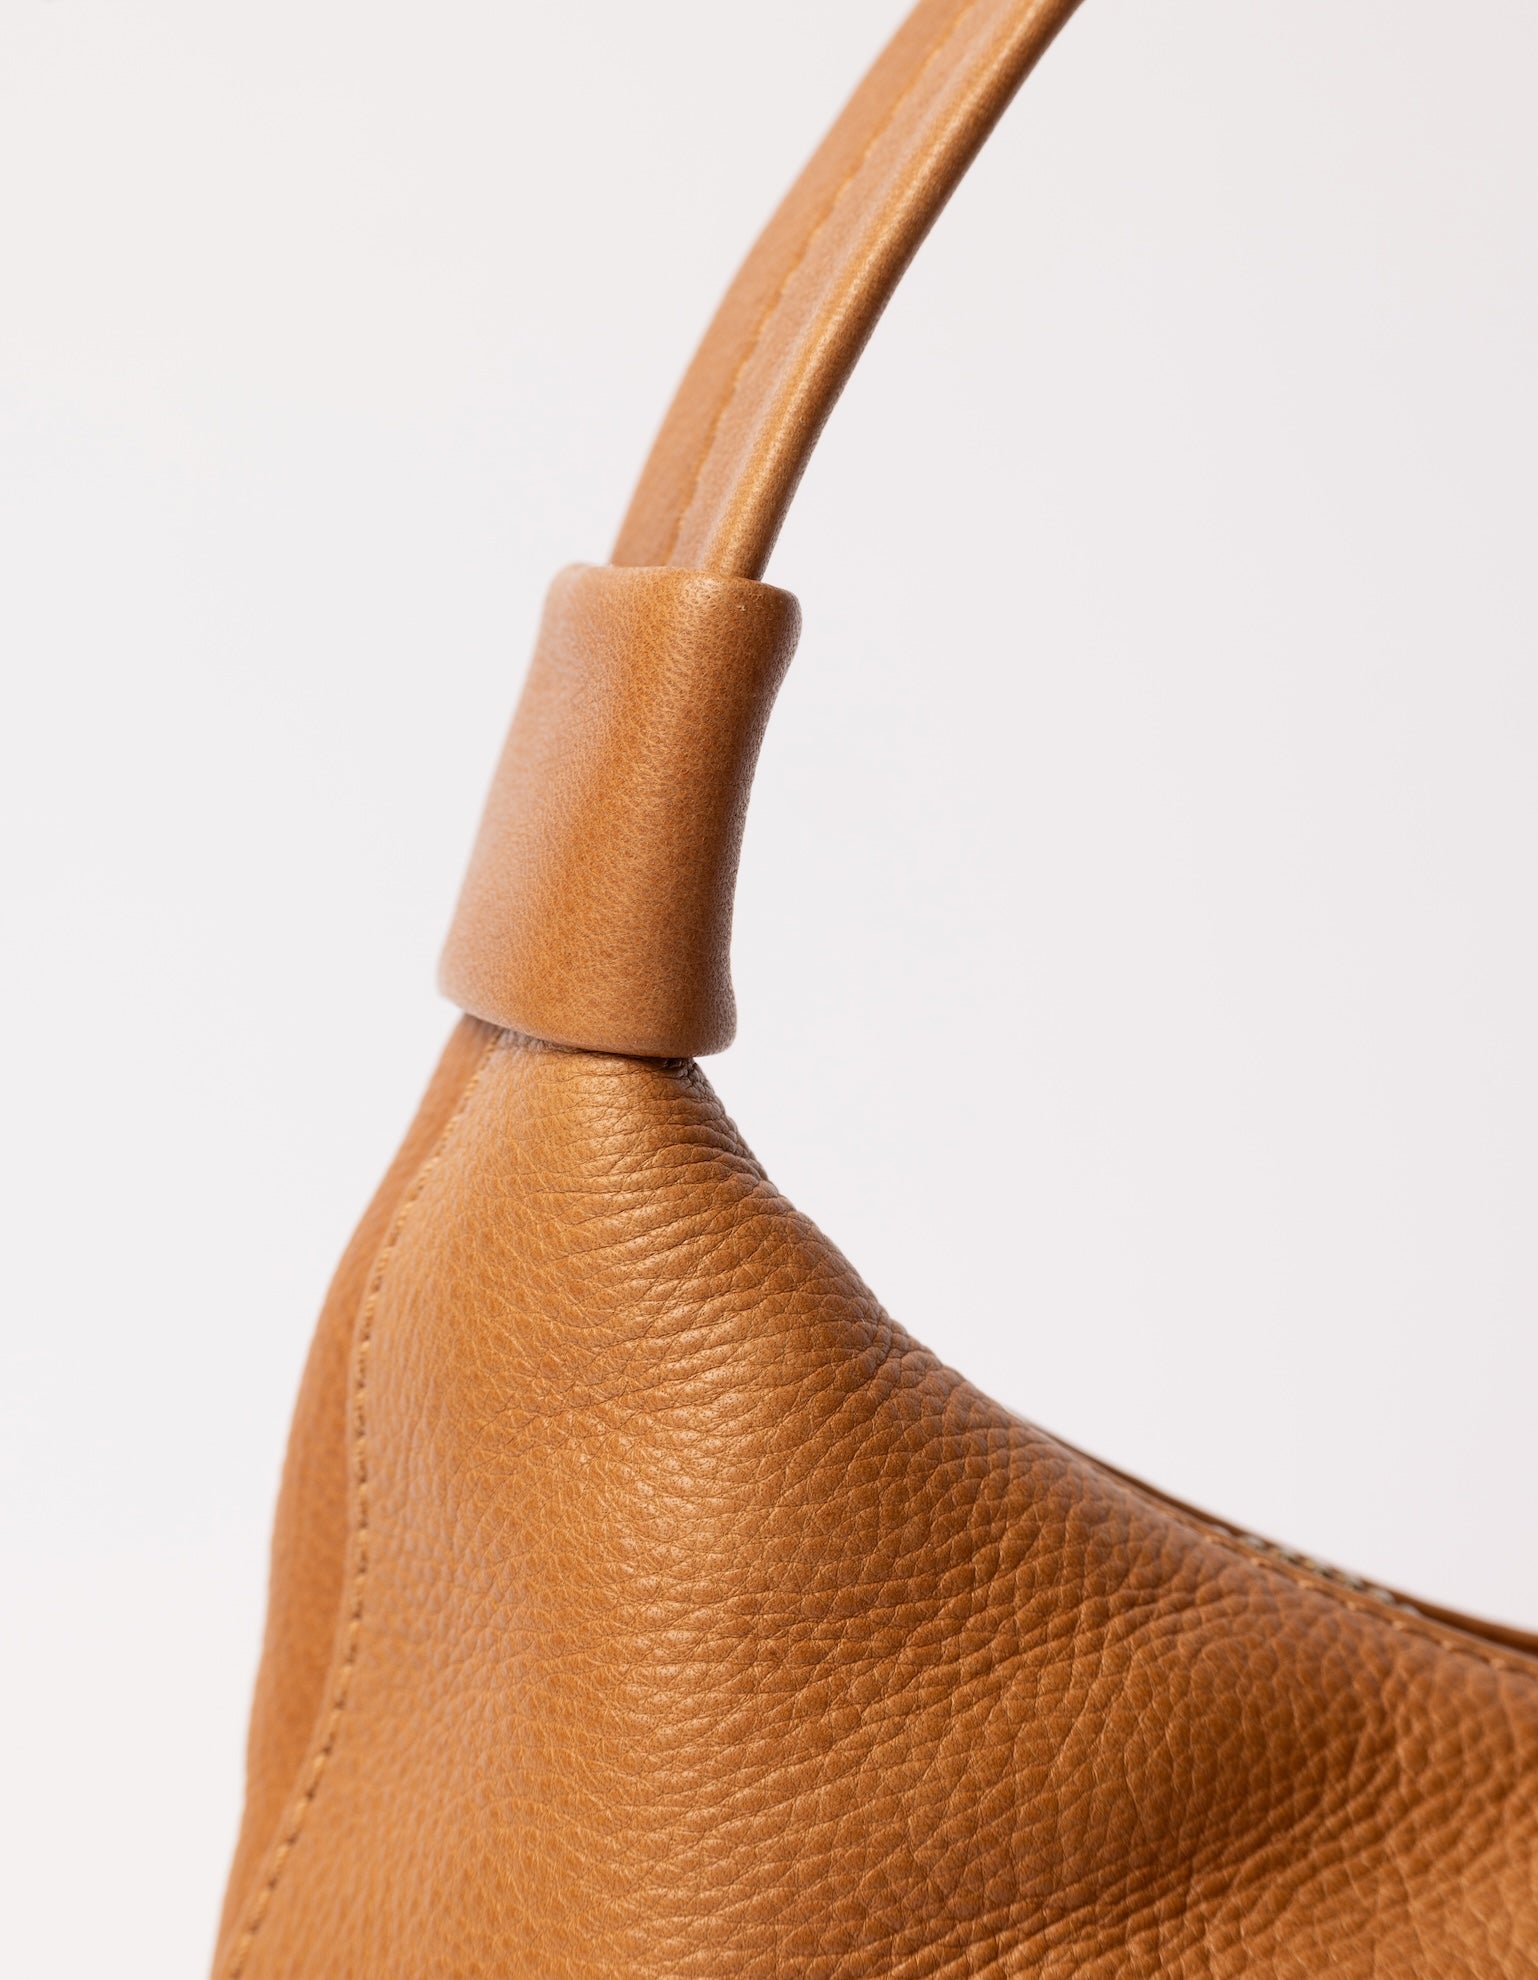 Bell-shaped leather shoulder bag - close-up of handle details